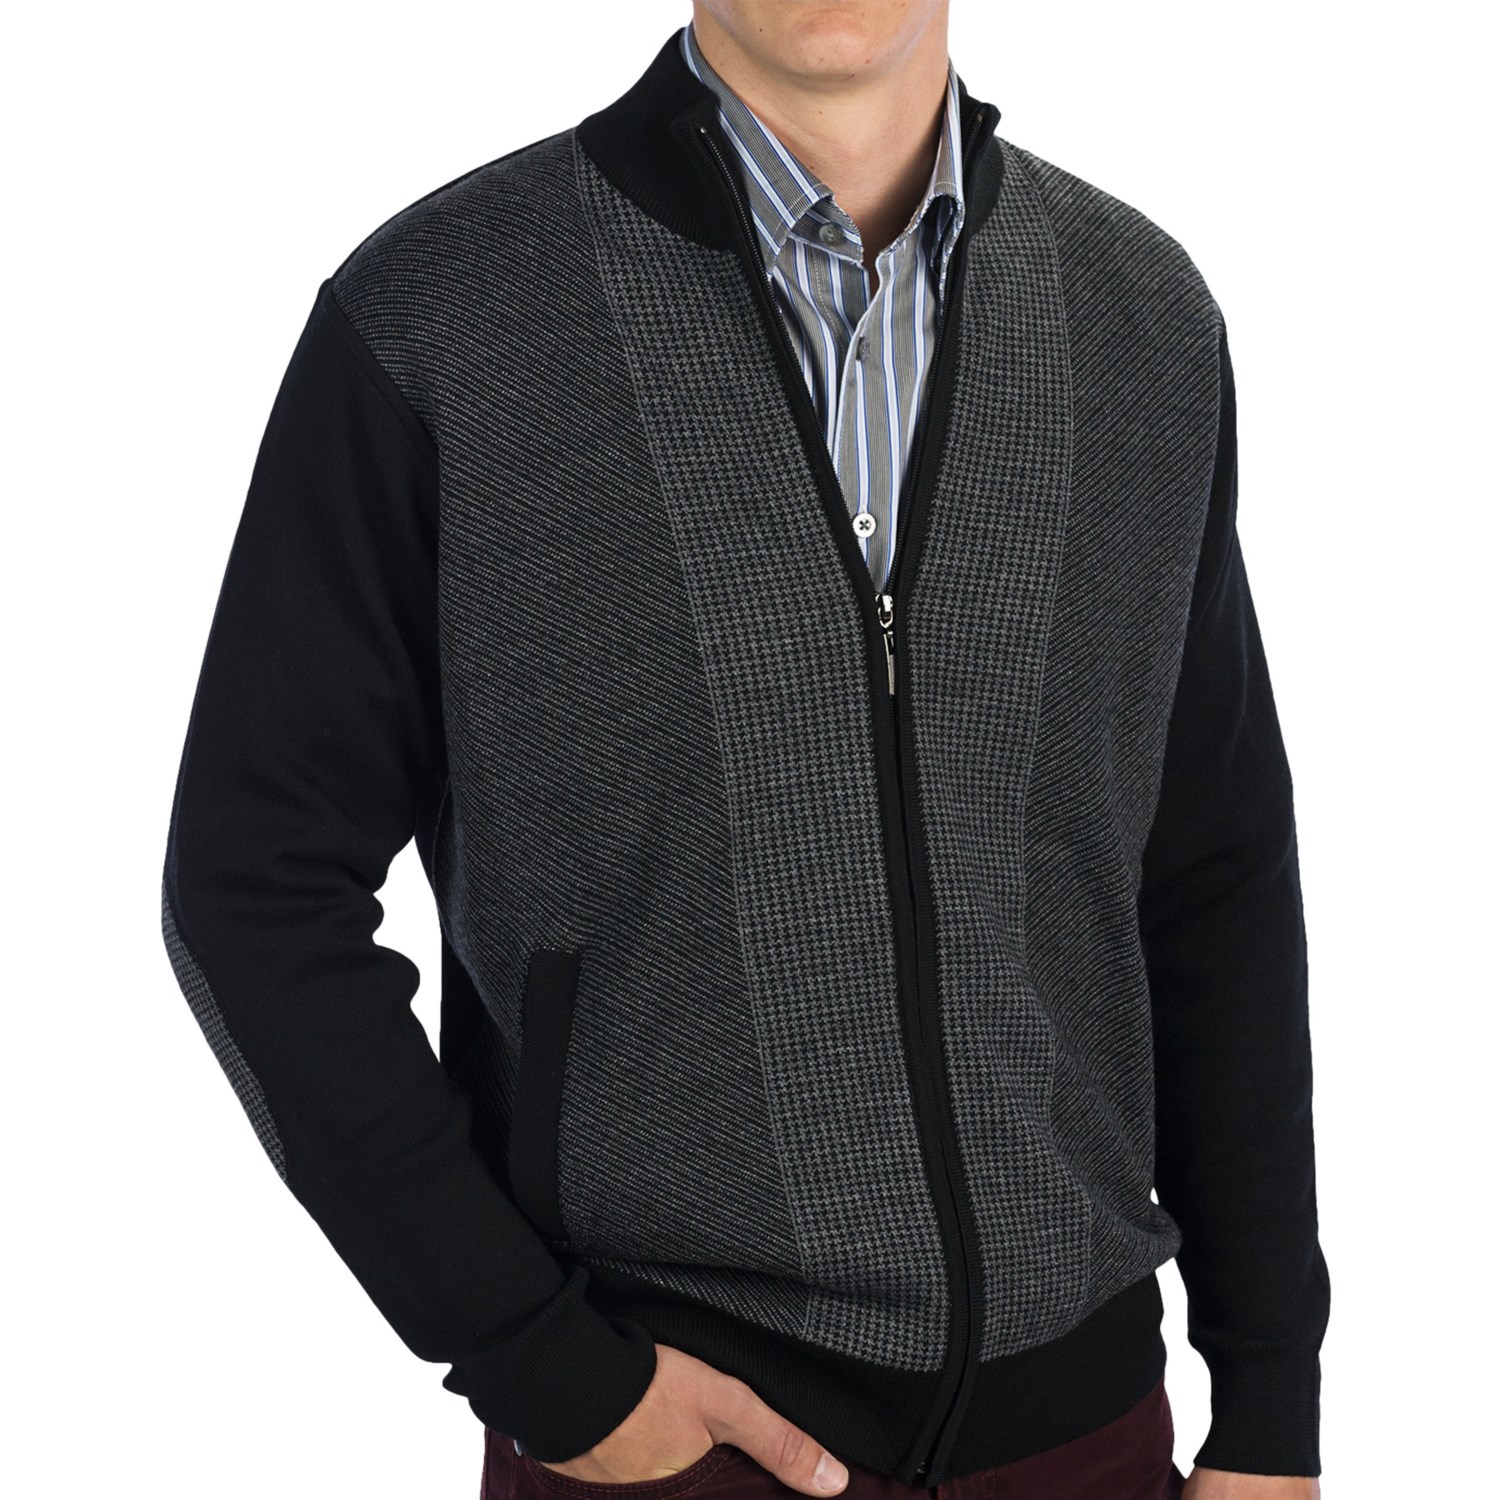 Bullock & Jones Cardigan Sweater - Merino Wool Blend, Zip Front (For Men)